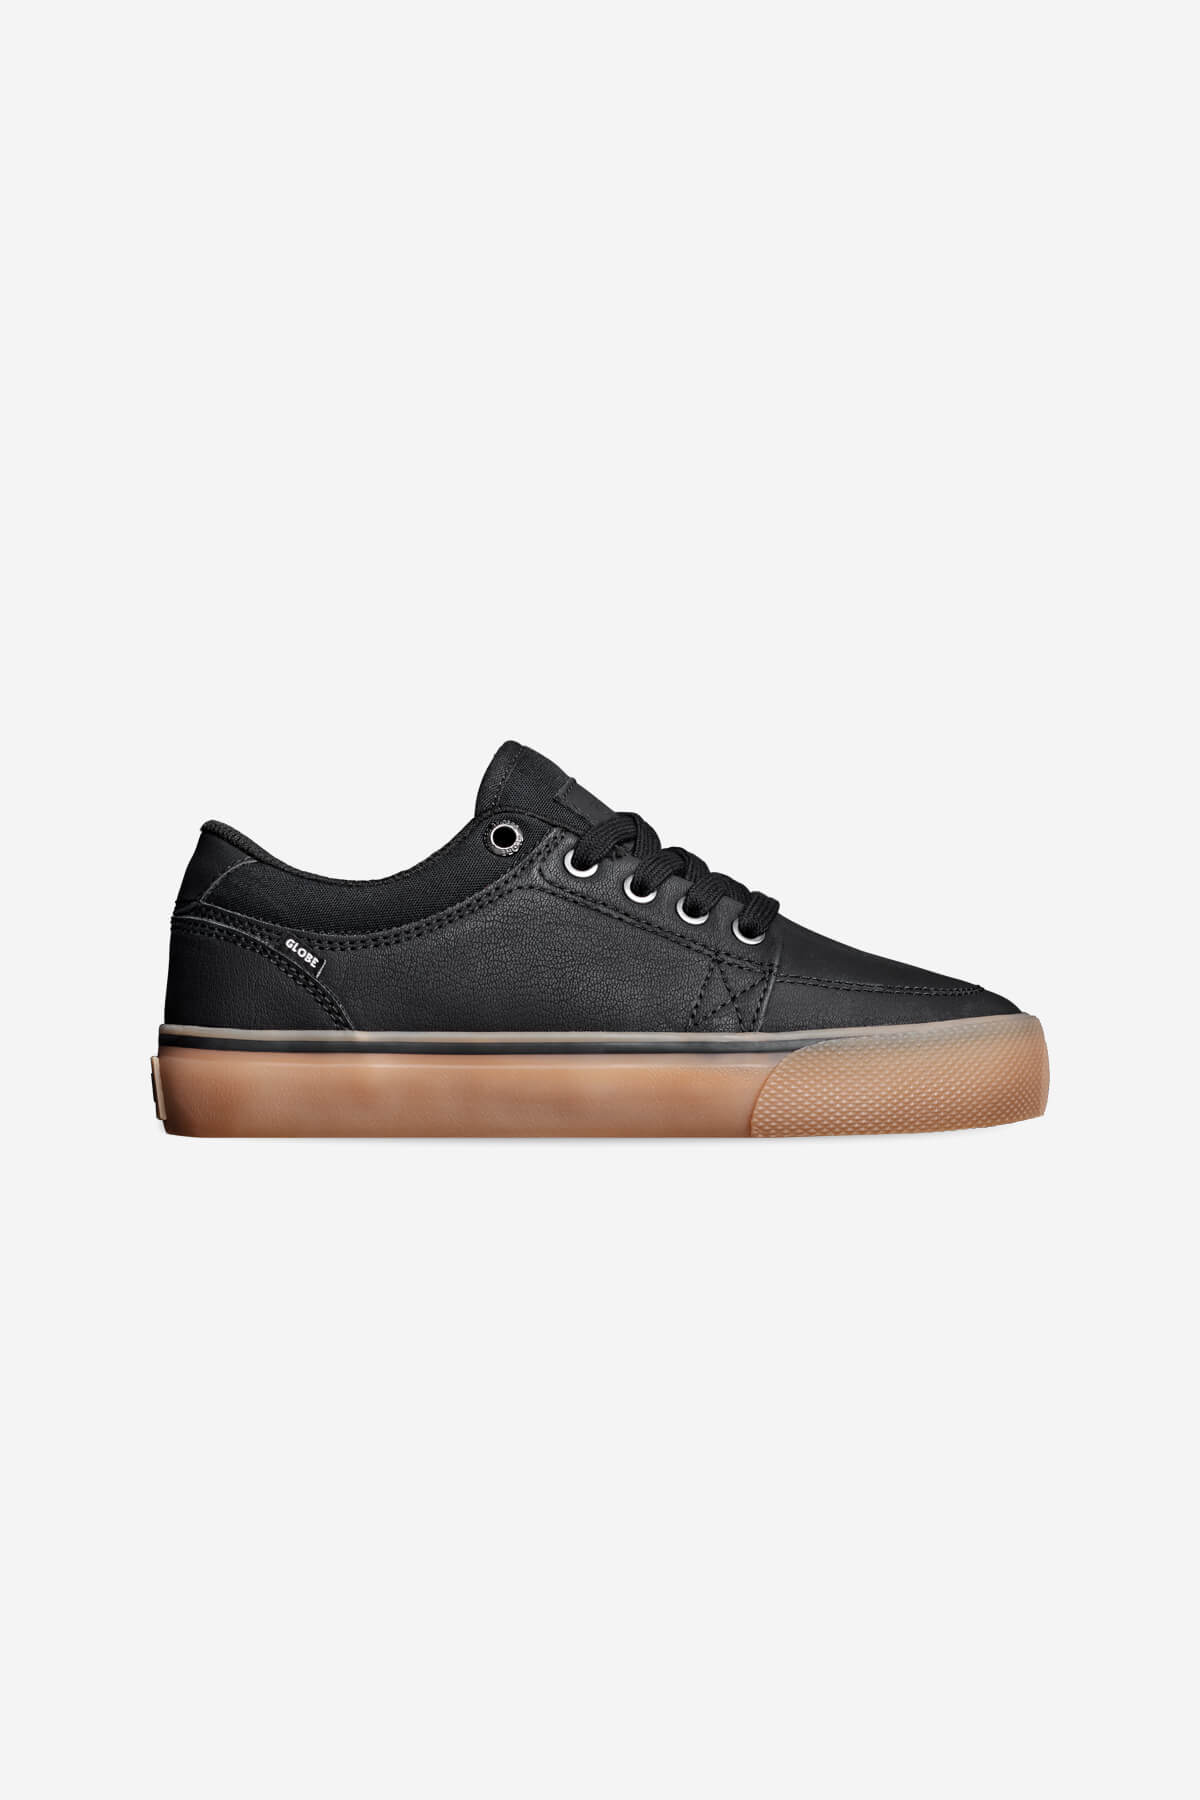 gs-kids black mock gum skateboard shoes